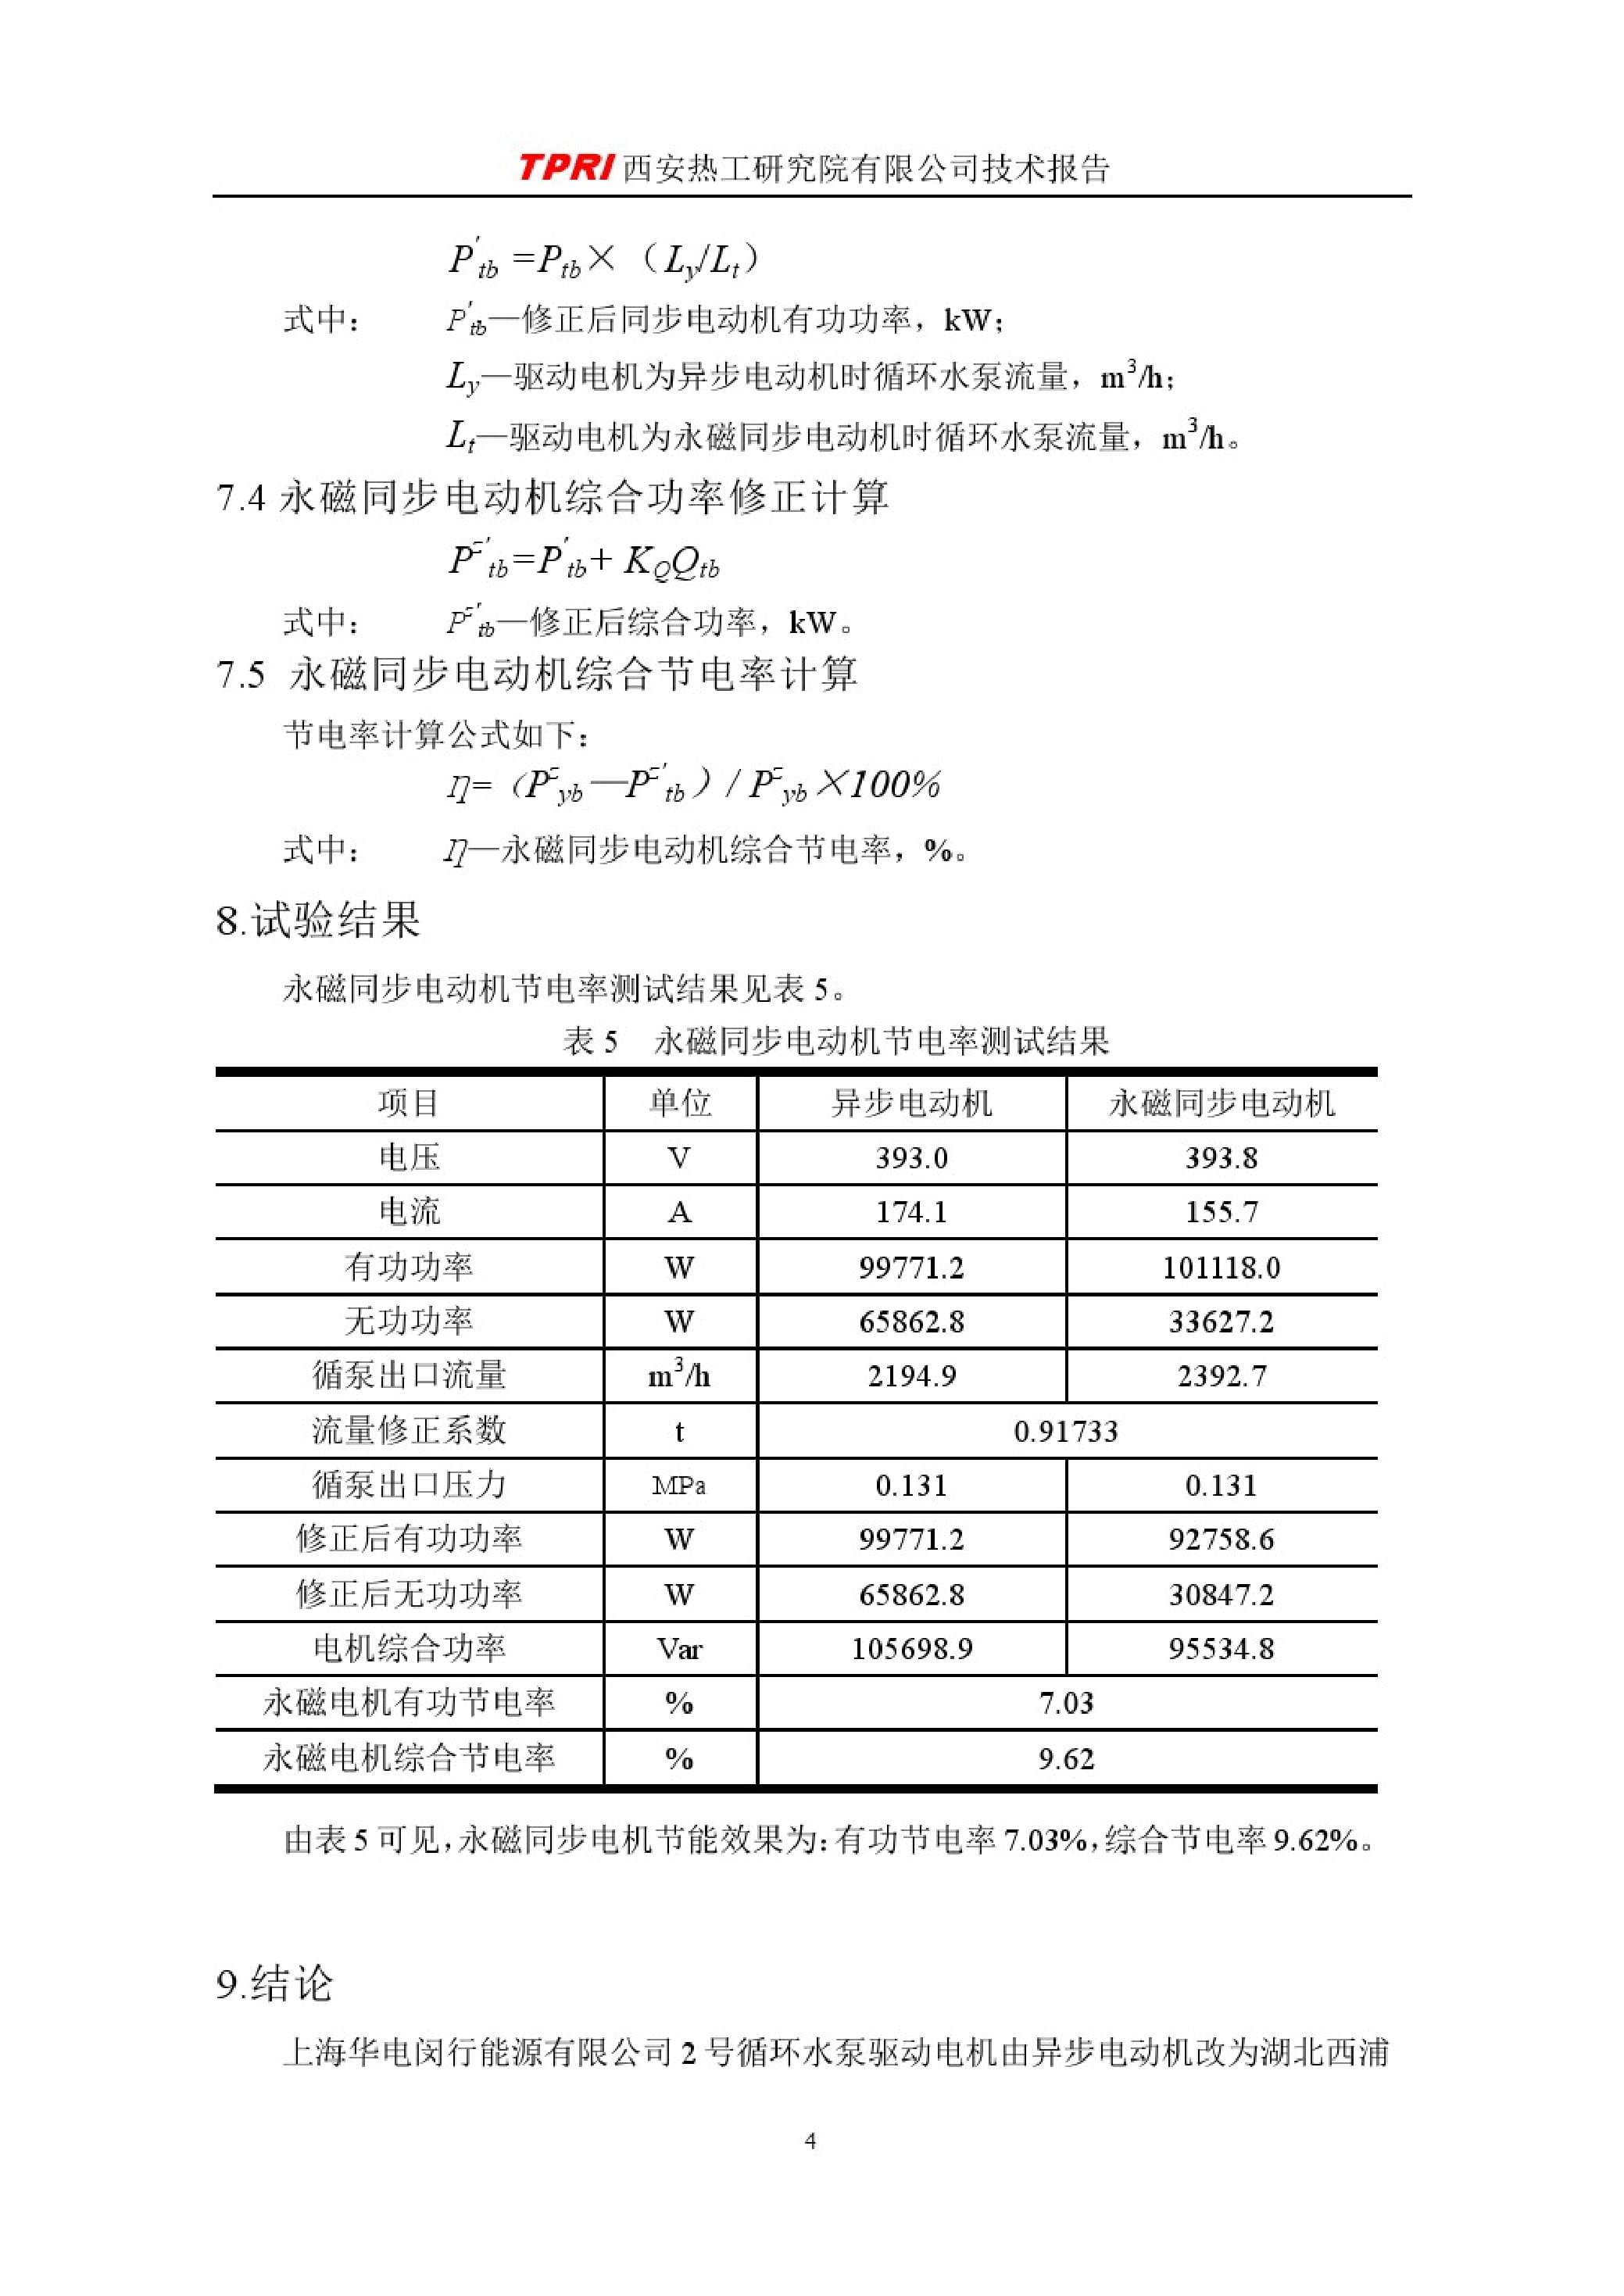 上海华电闵行能源有限公司节能测试报告（西安热工院）-09.jpg